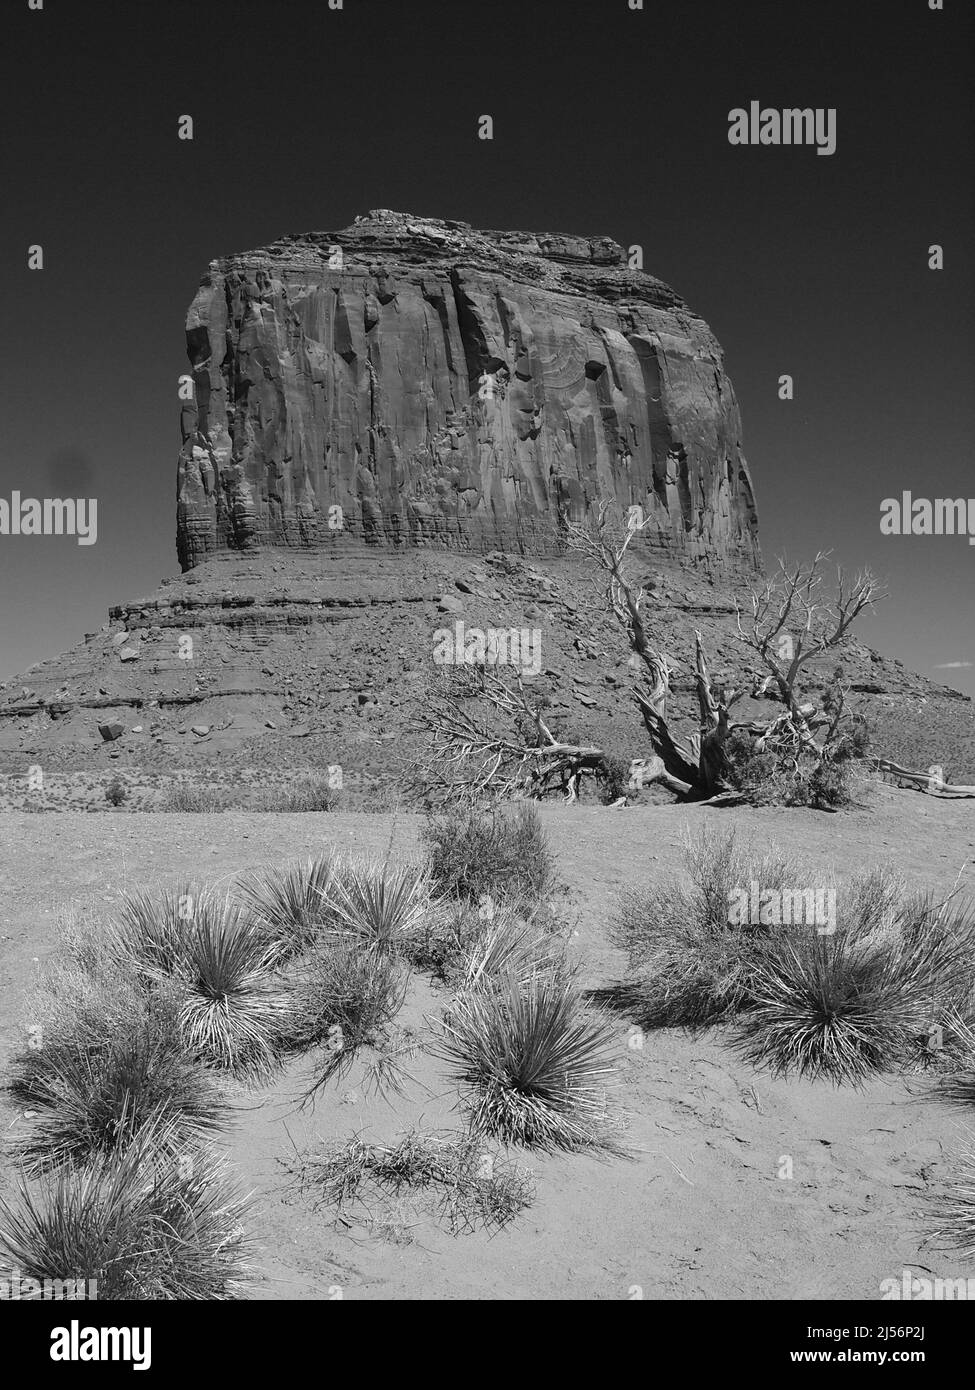 Monument Valley, Arizona, nella Navajo Indian Nation, vicino all'angolo nord-orientale del confine con lo Utah, Arizona. Oljato - Monumento Valle Foto Stock